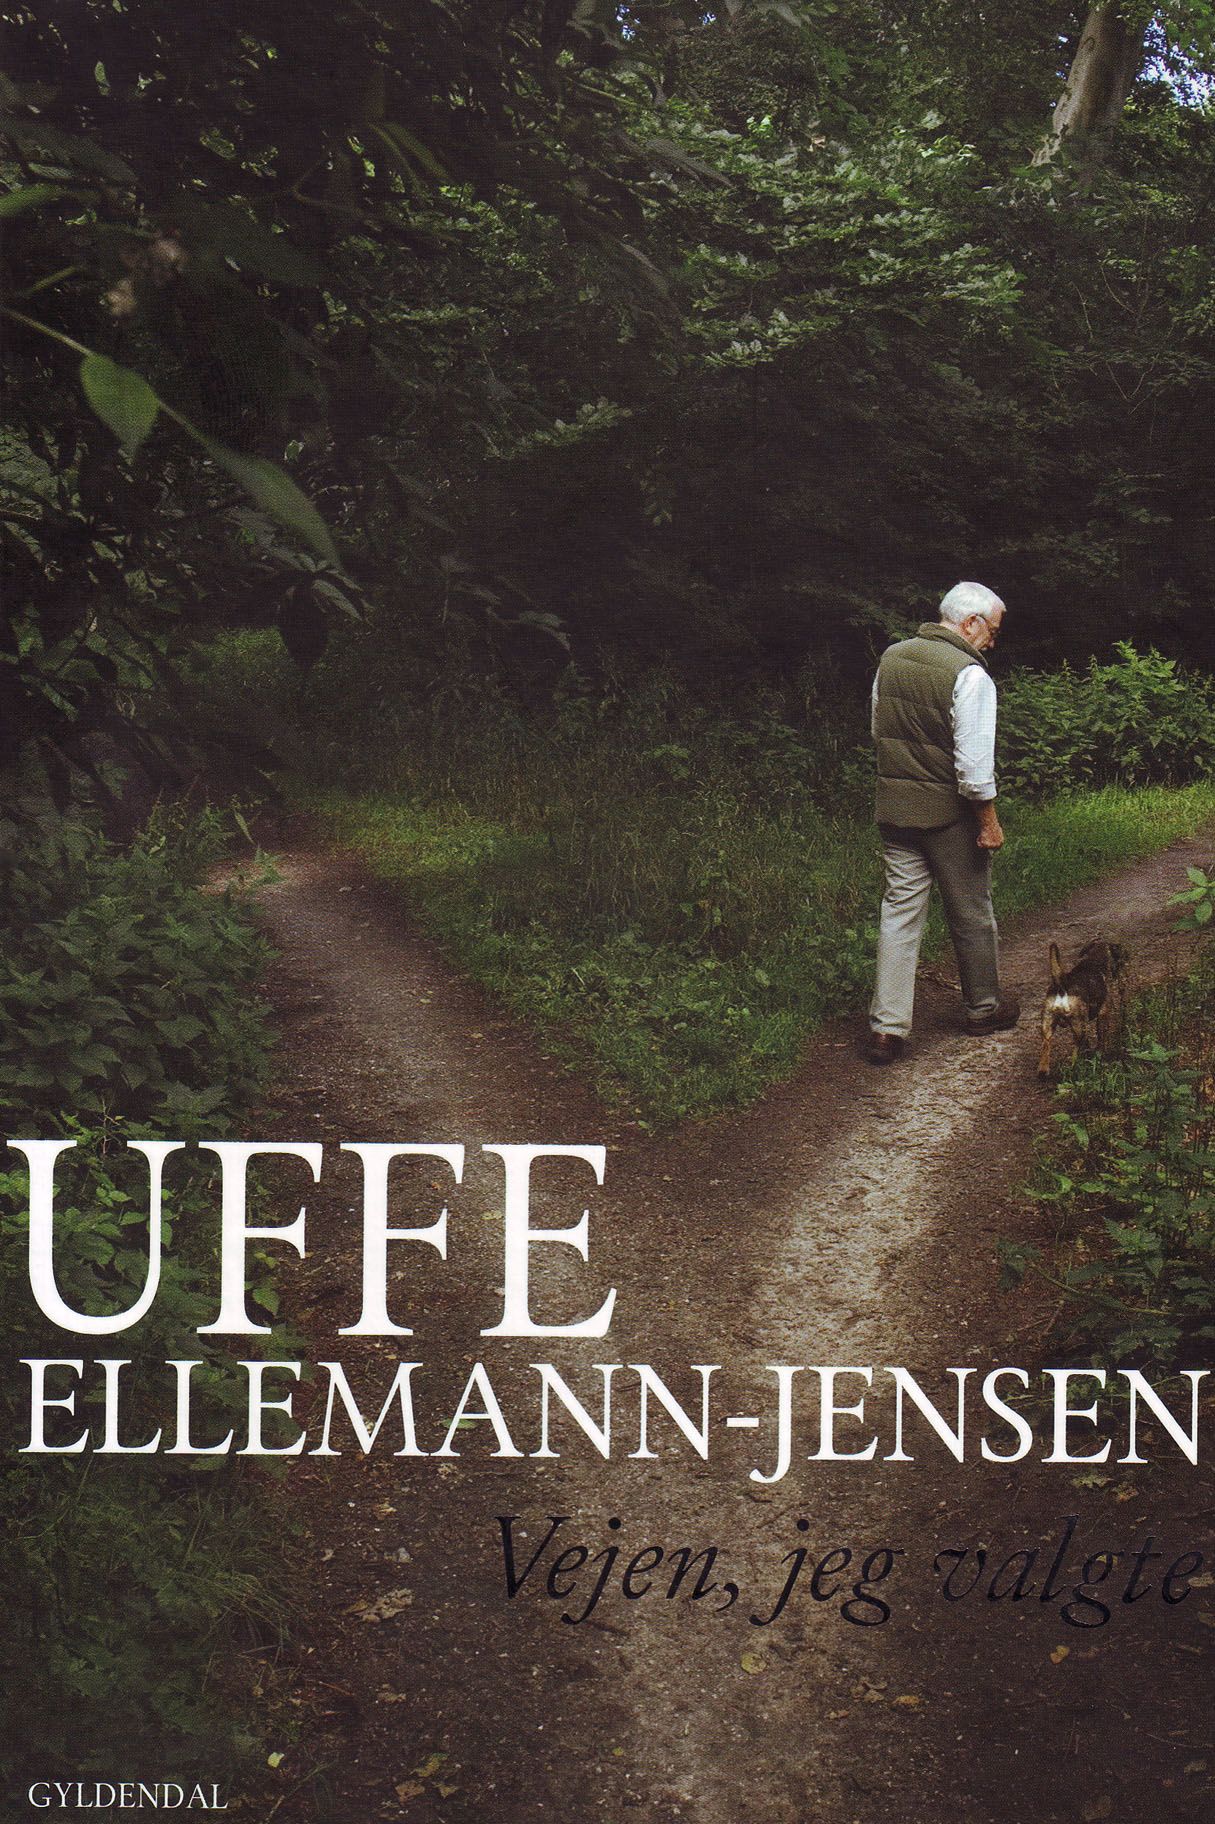 Vejen, jeg valgte, e-bog af Uffe Ellemann-Jensen